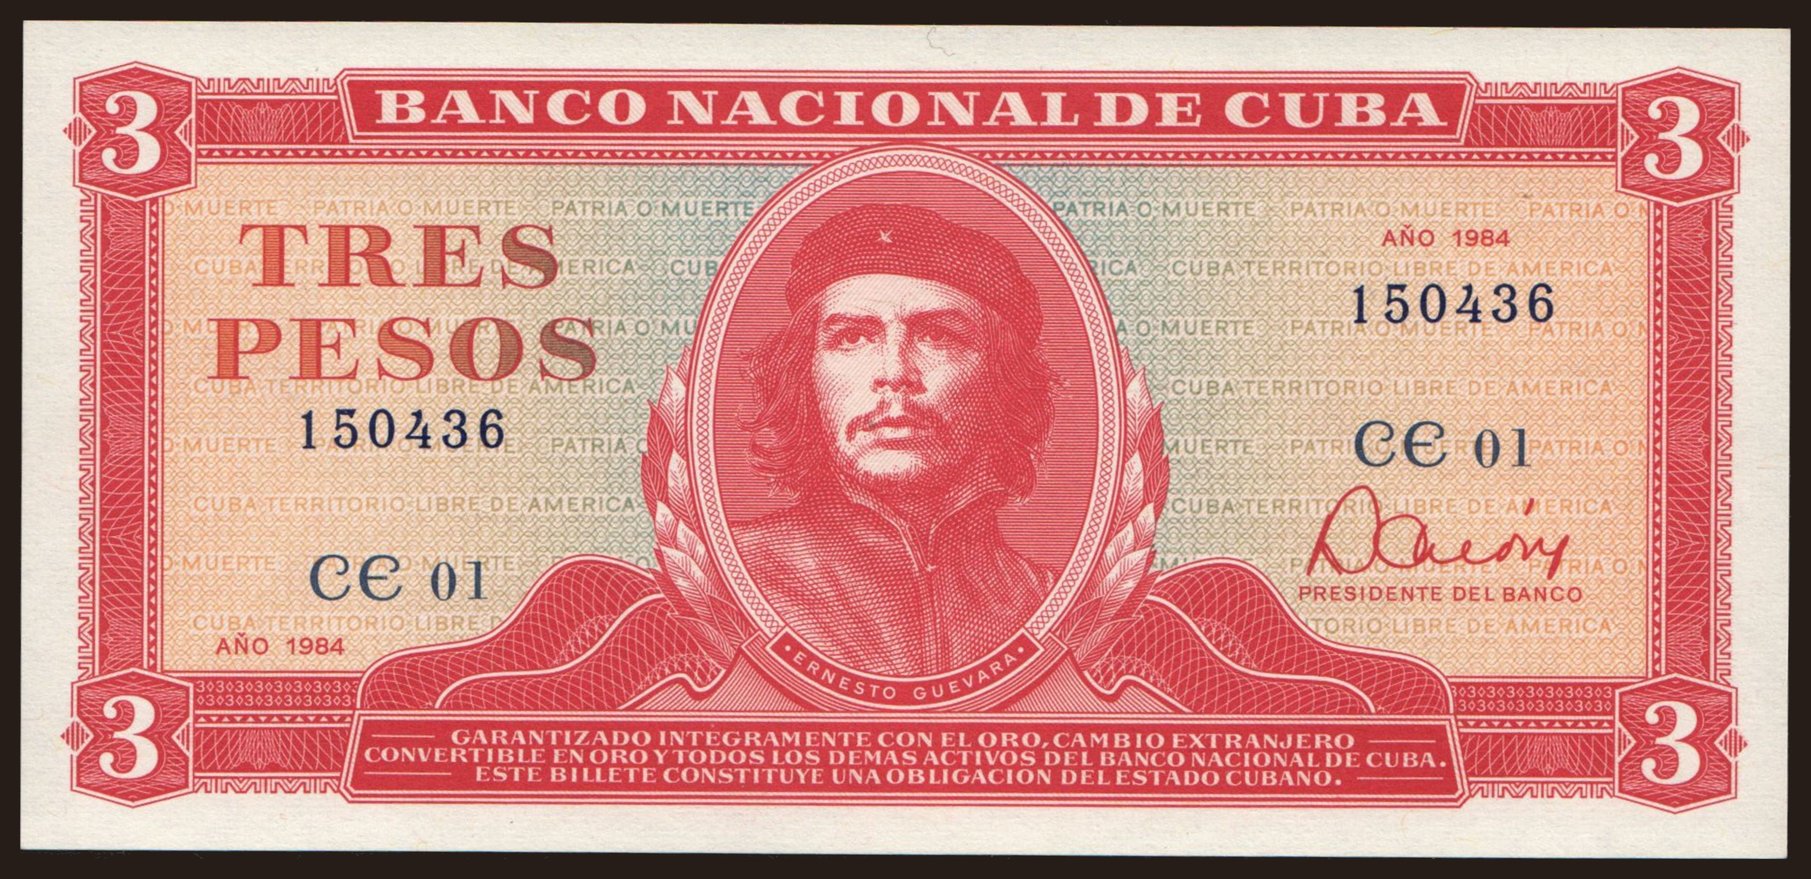 3 pesos, 1984 | notafilia-kp.com